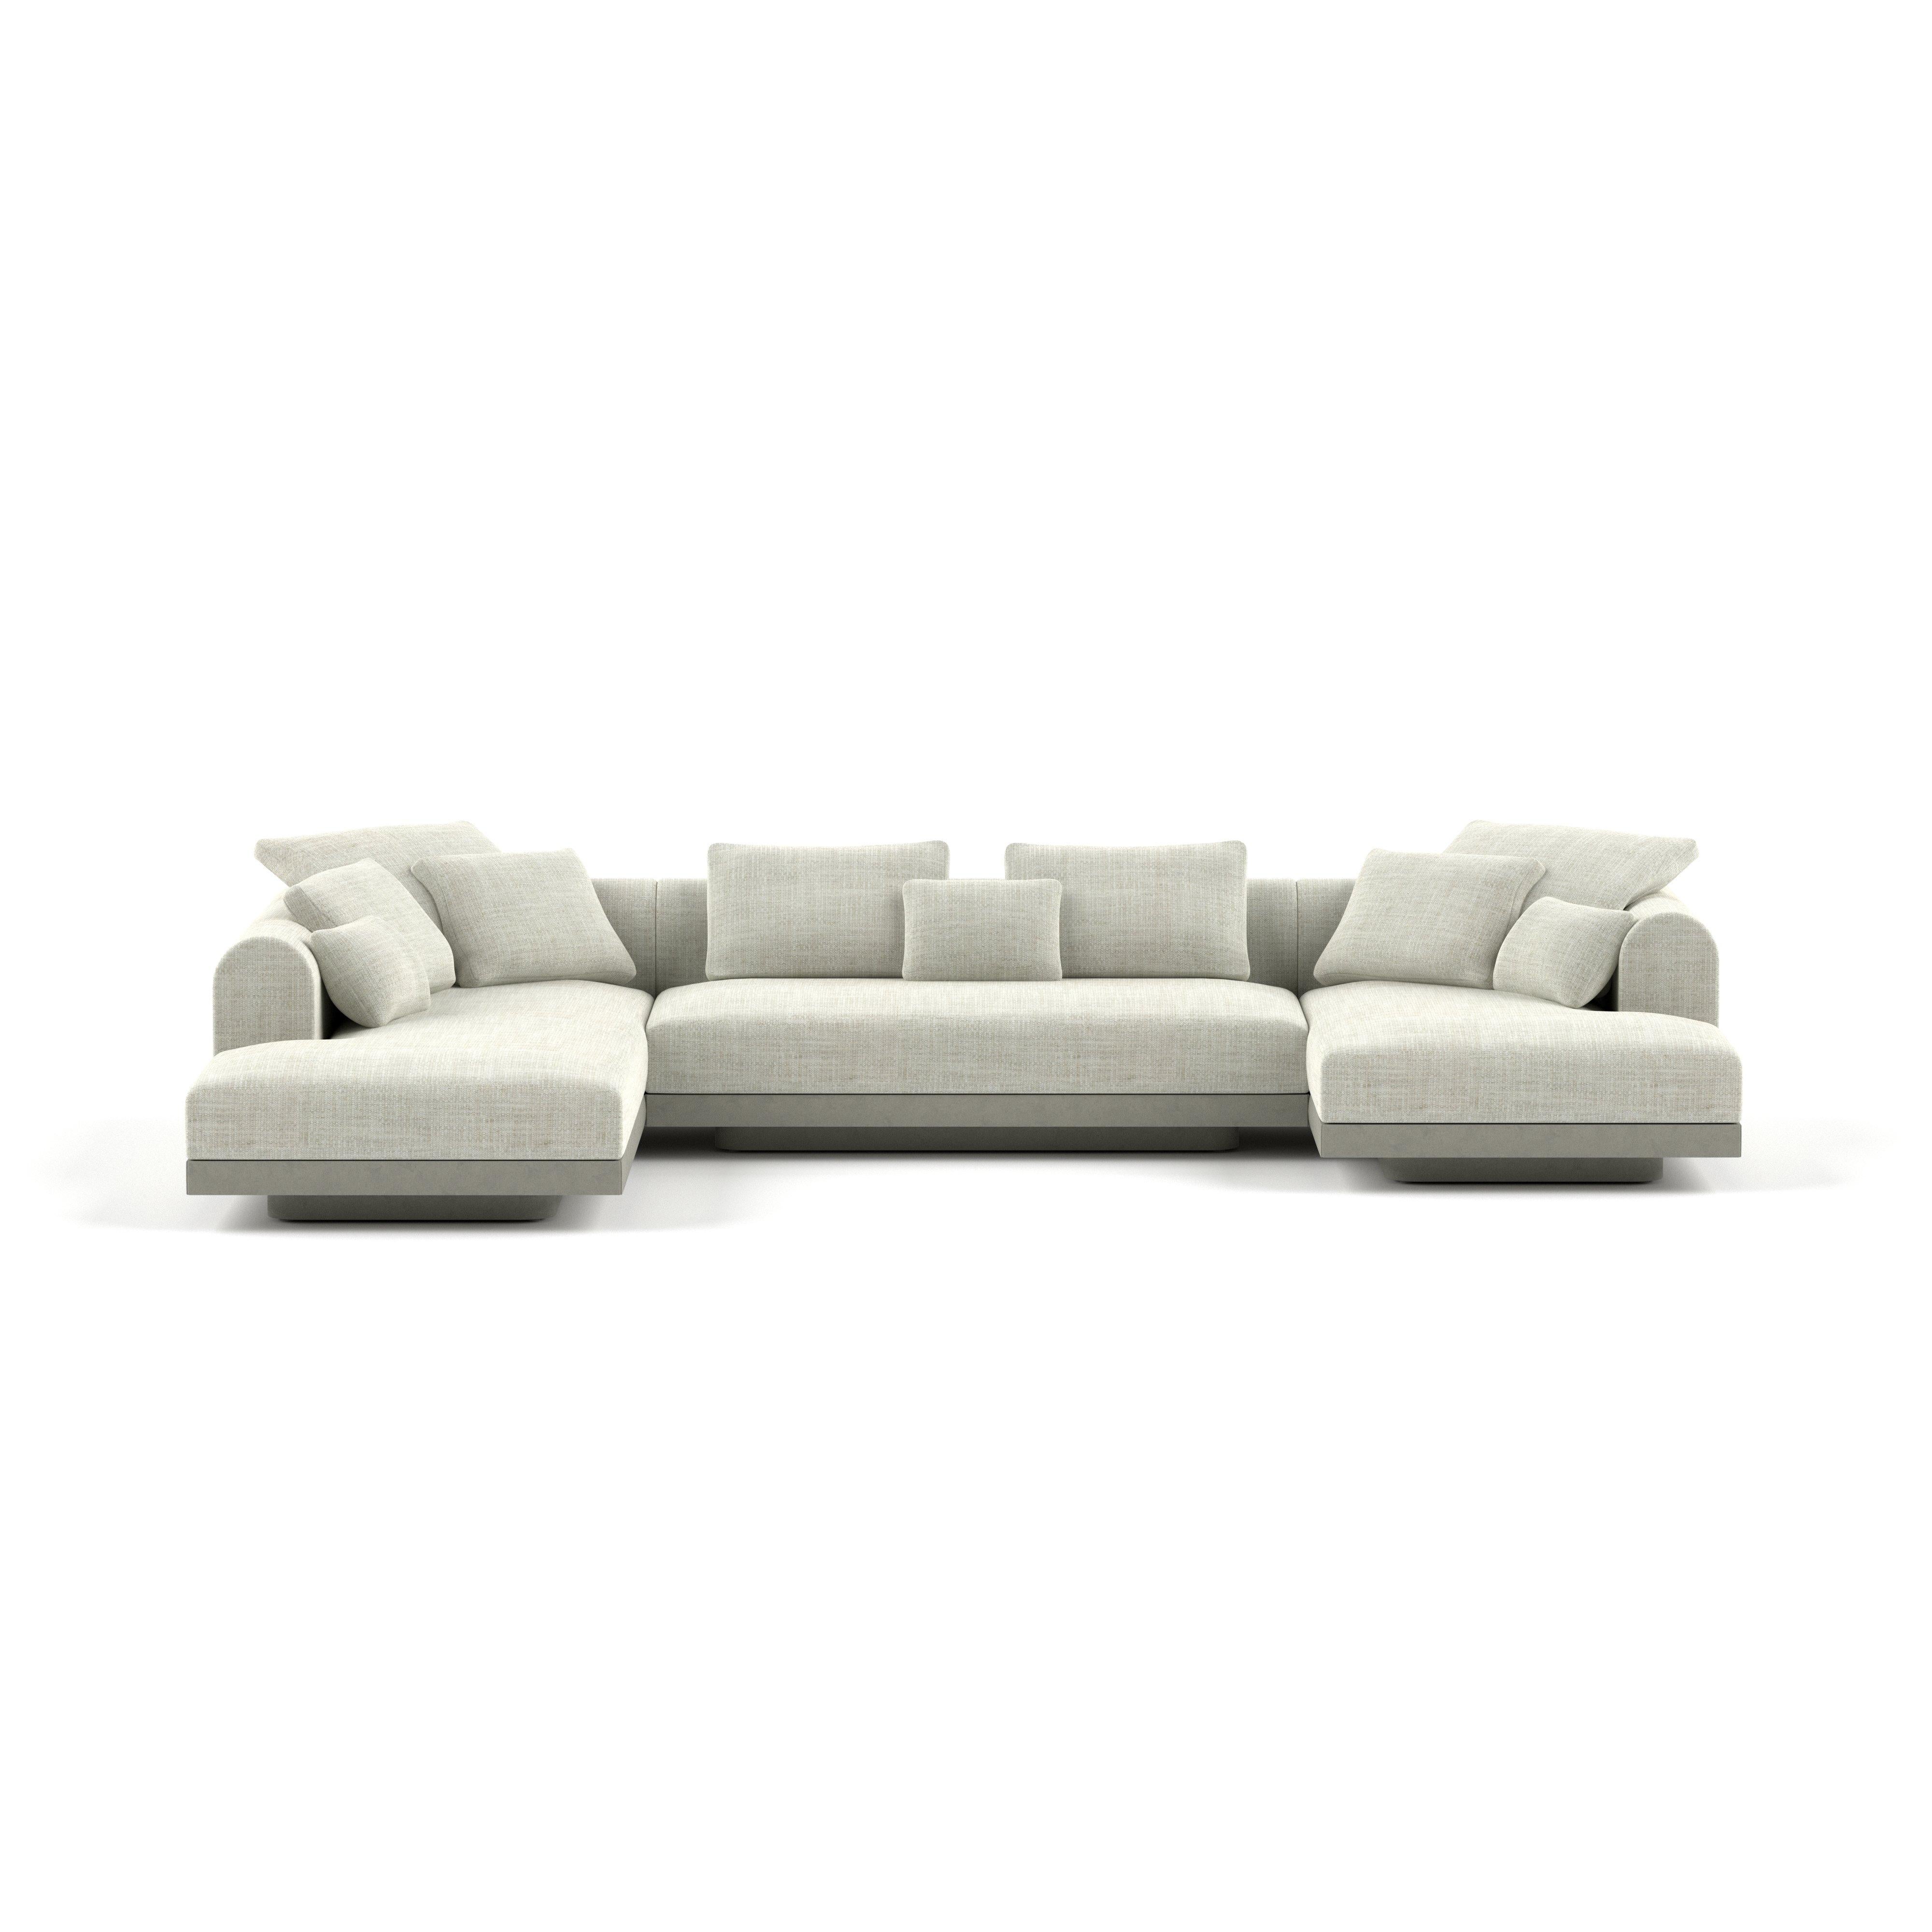 'Aqueduct' Contemporary Sofa by Poiat, Setup 4, Fox 02, High Plinth For Sale 2